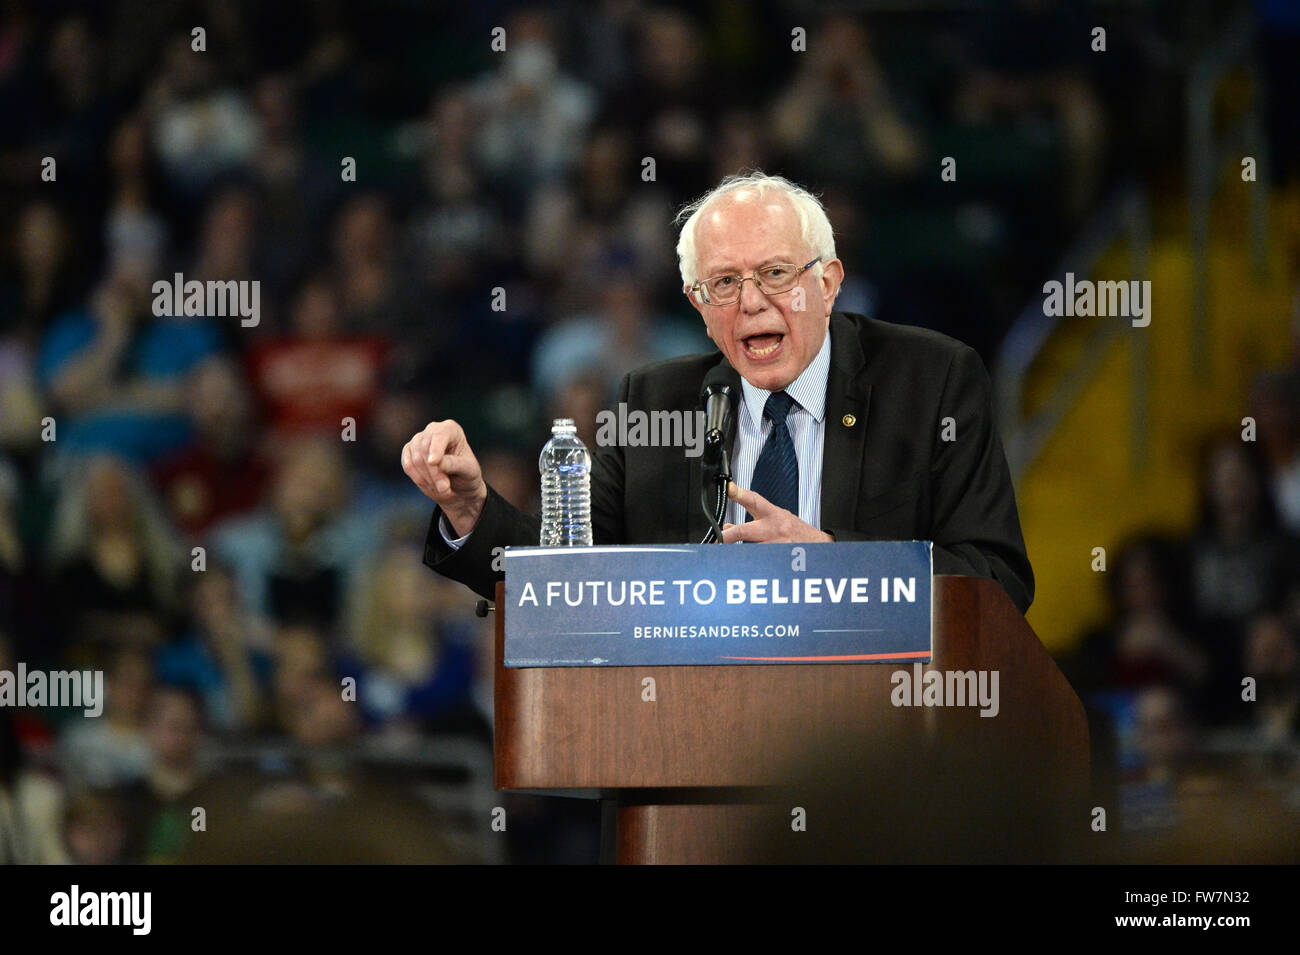 Saint Charles, MO, Estados Unidos - 14 de marzo de 2016: Senador norteamericano y candidato presidencial demócrata Bernie Sanders habla en el rallye. Foto de stock